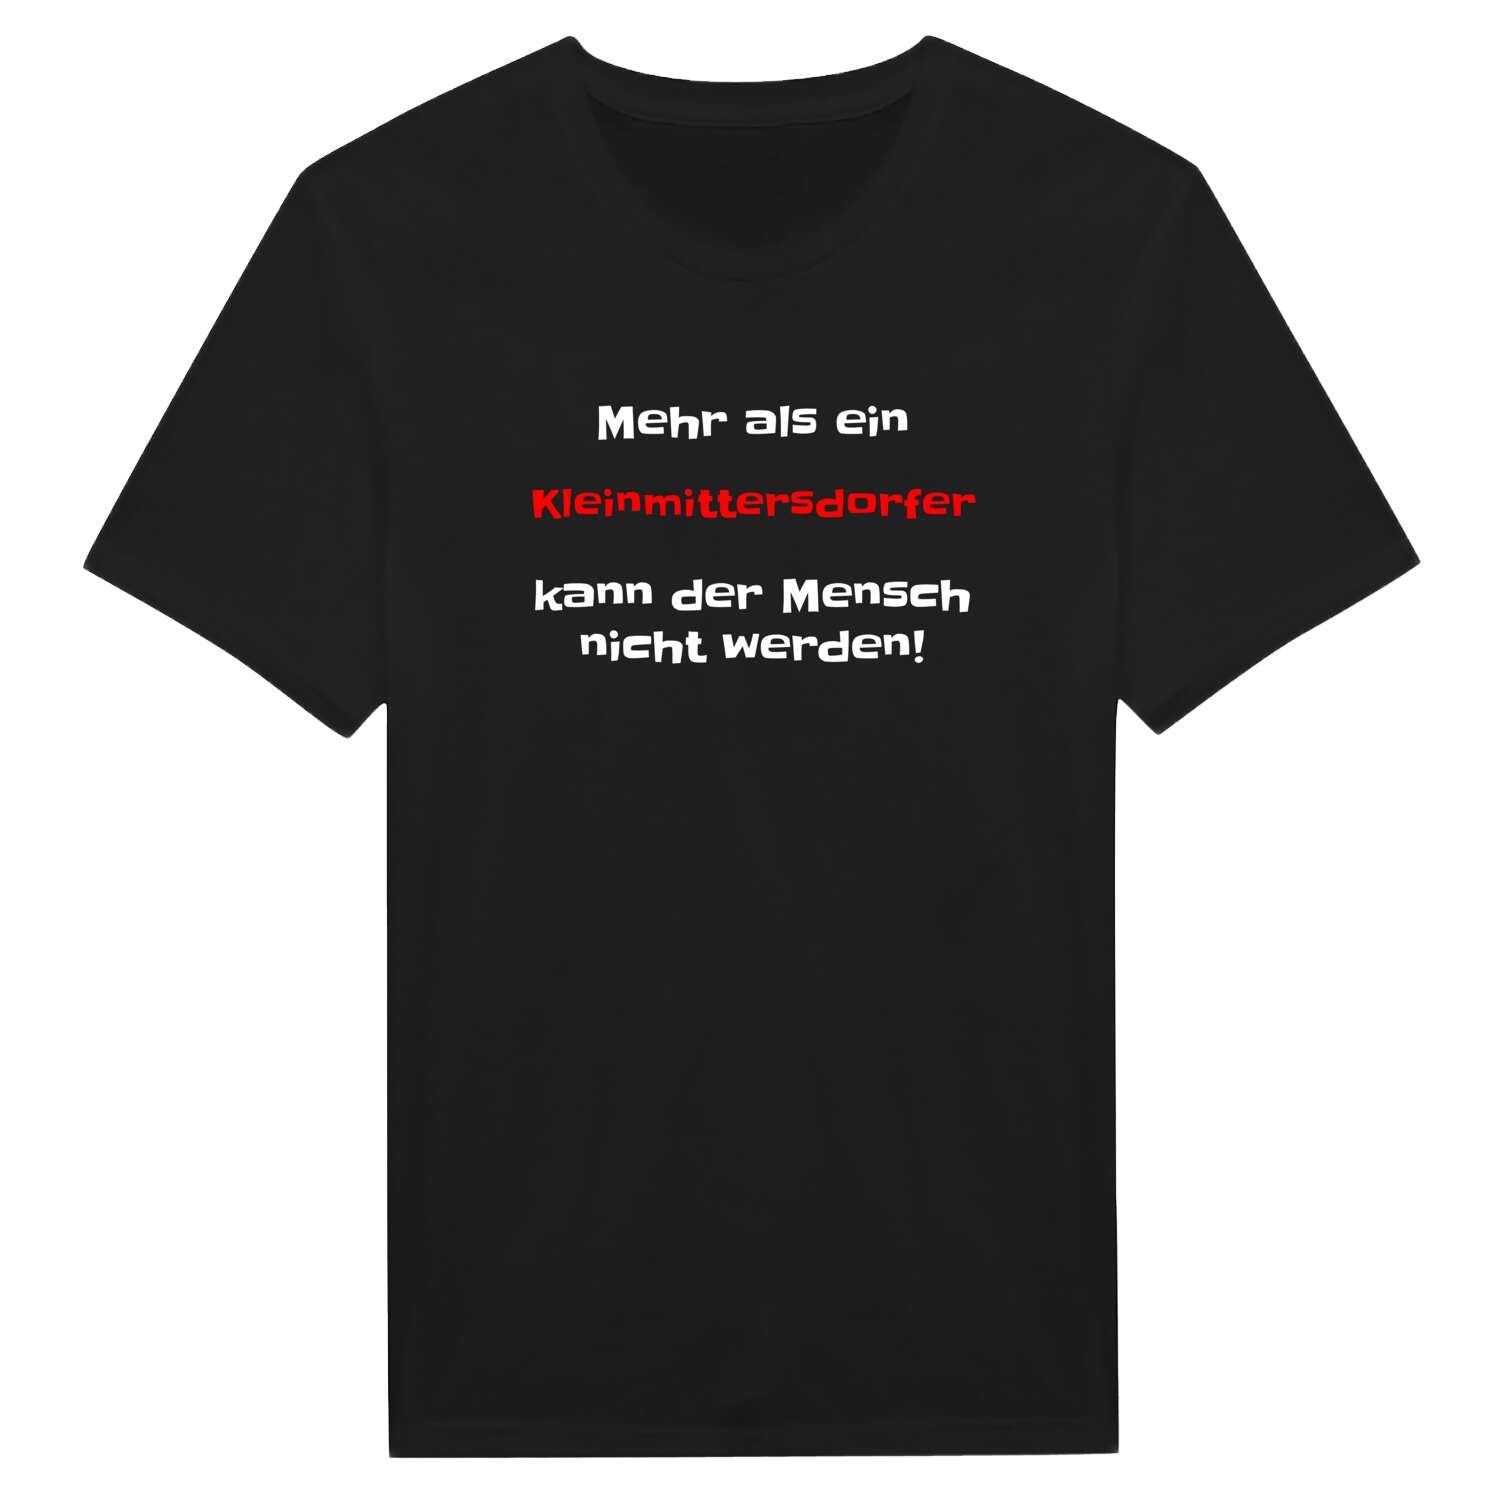 Kleinmittersdorf T-Shirt »Mehr als ein«